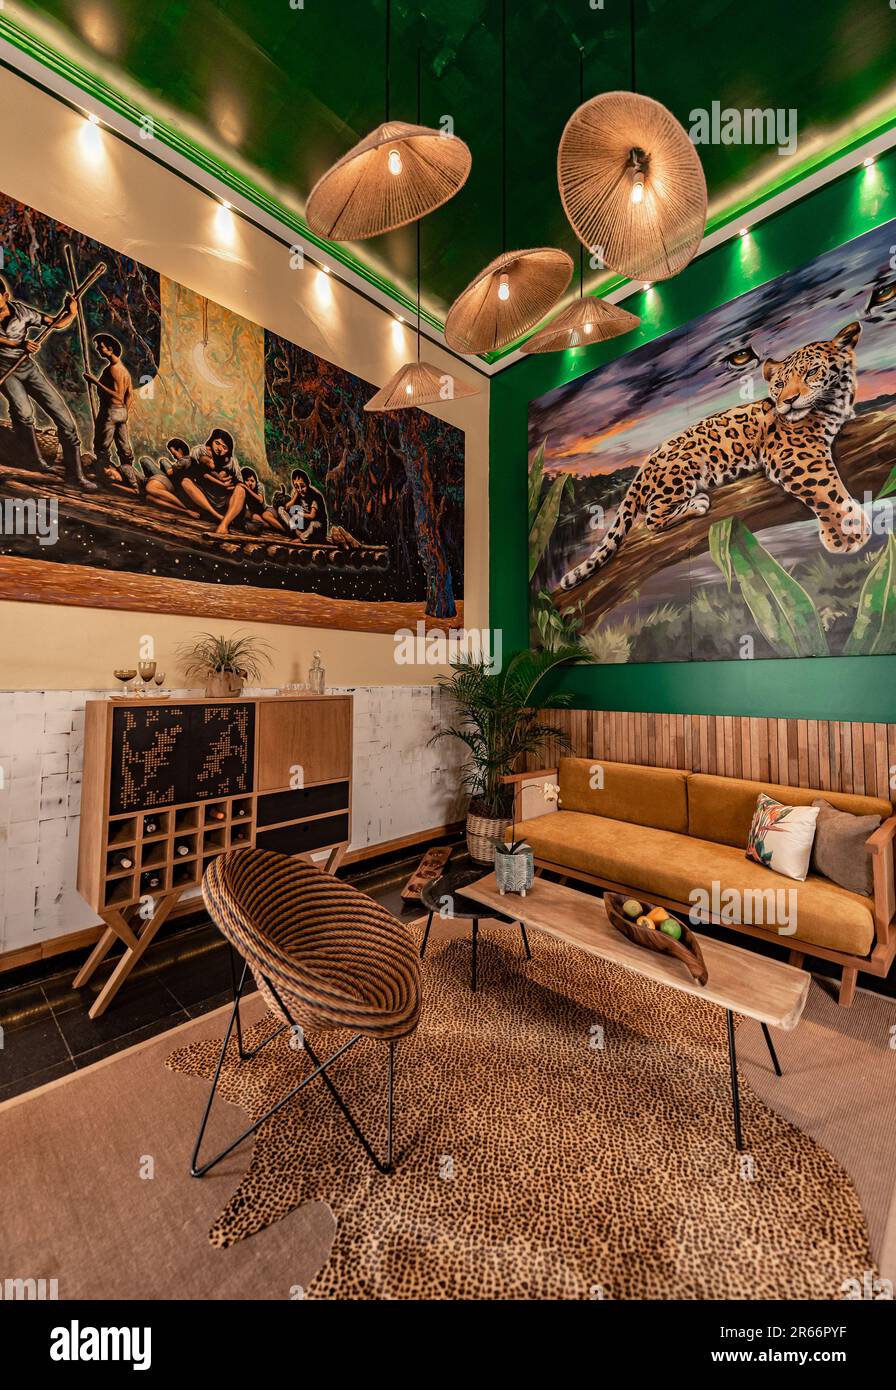 ambiente de sala con iluminaciones y muebles inspirados en la selva Stock Photo